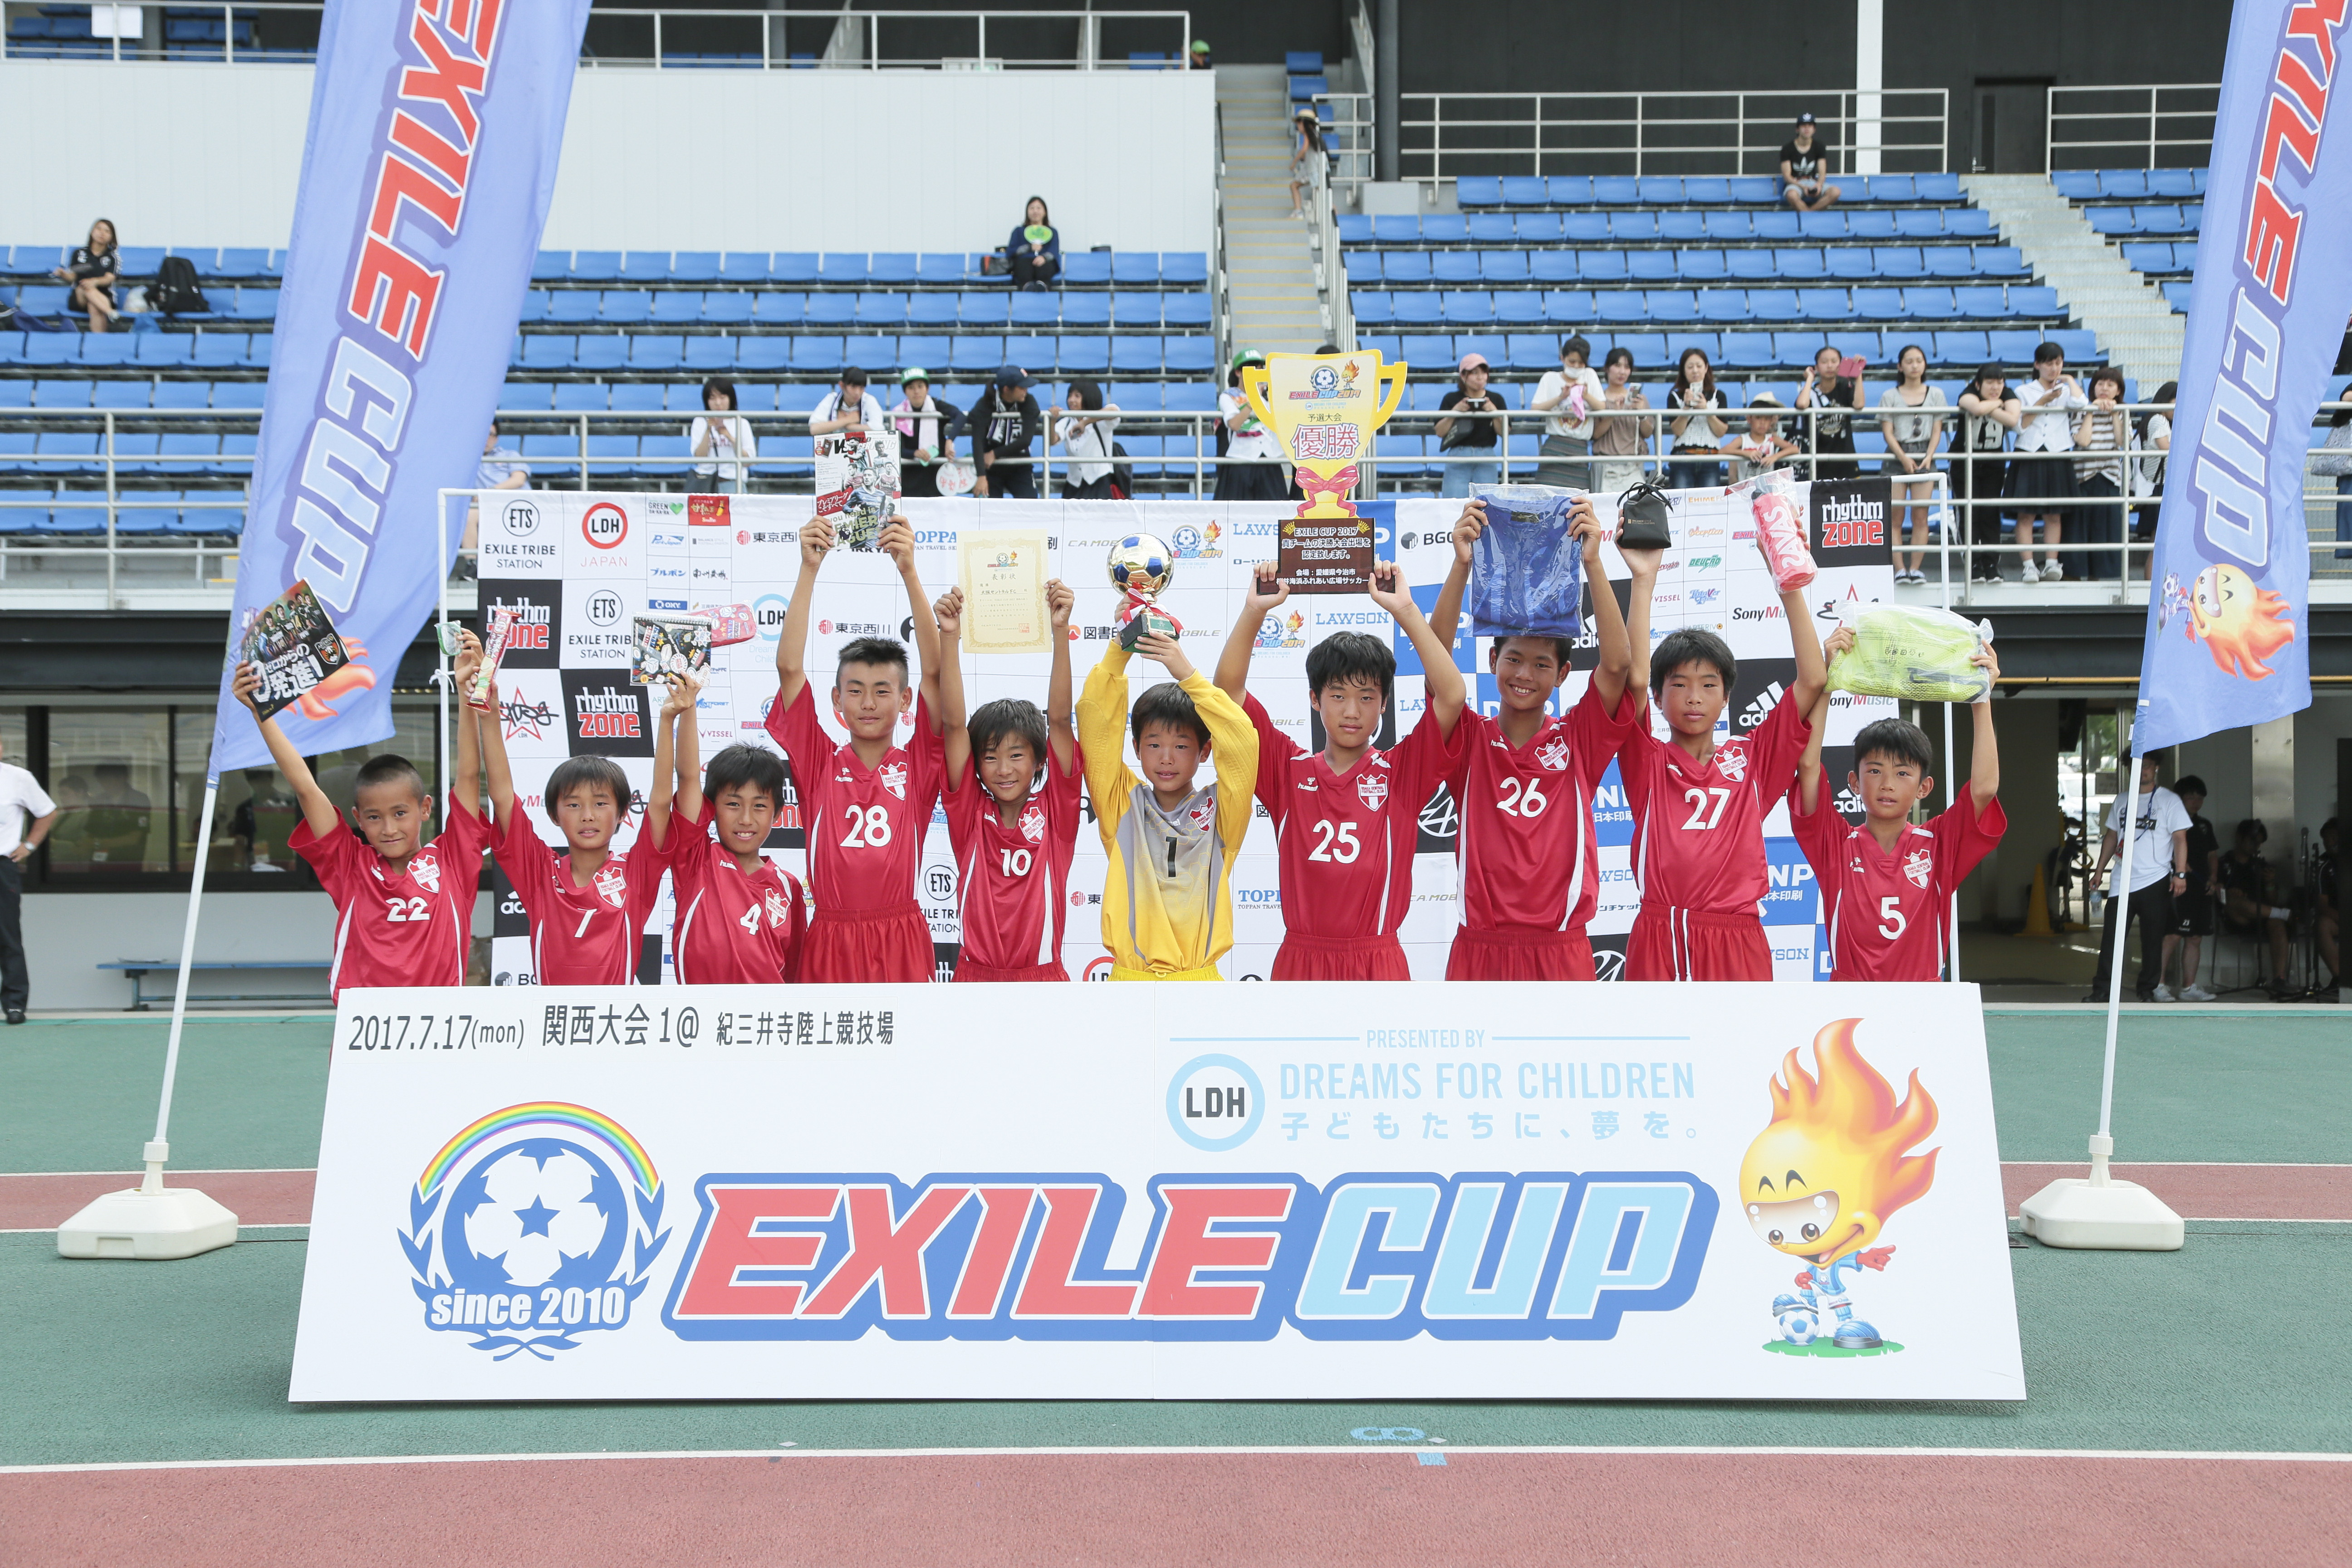 Exile Cup 17 関西大会1を制したのは 虎の子の1点を守り抜いた大阪セントラルfc サッカーキング